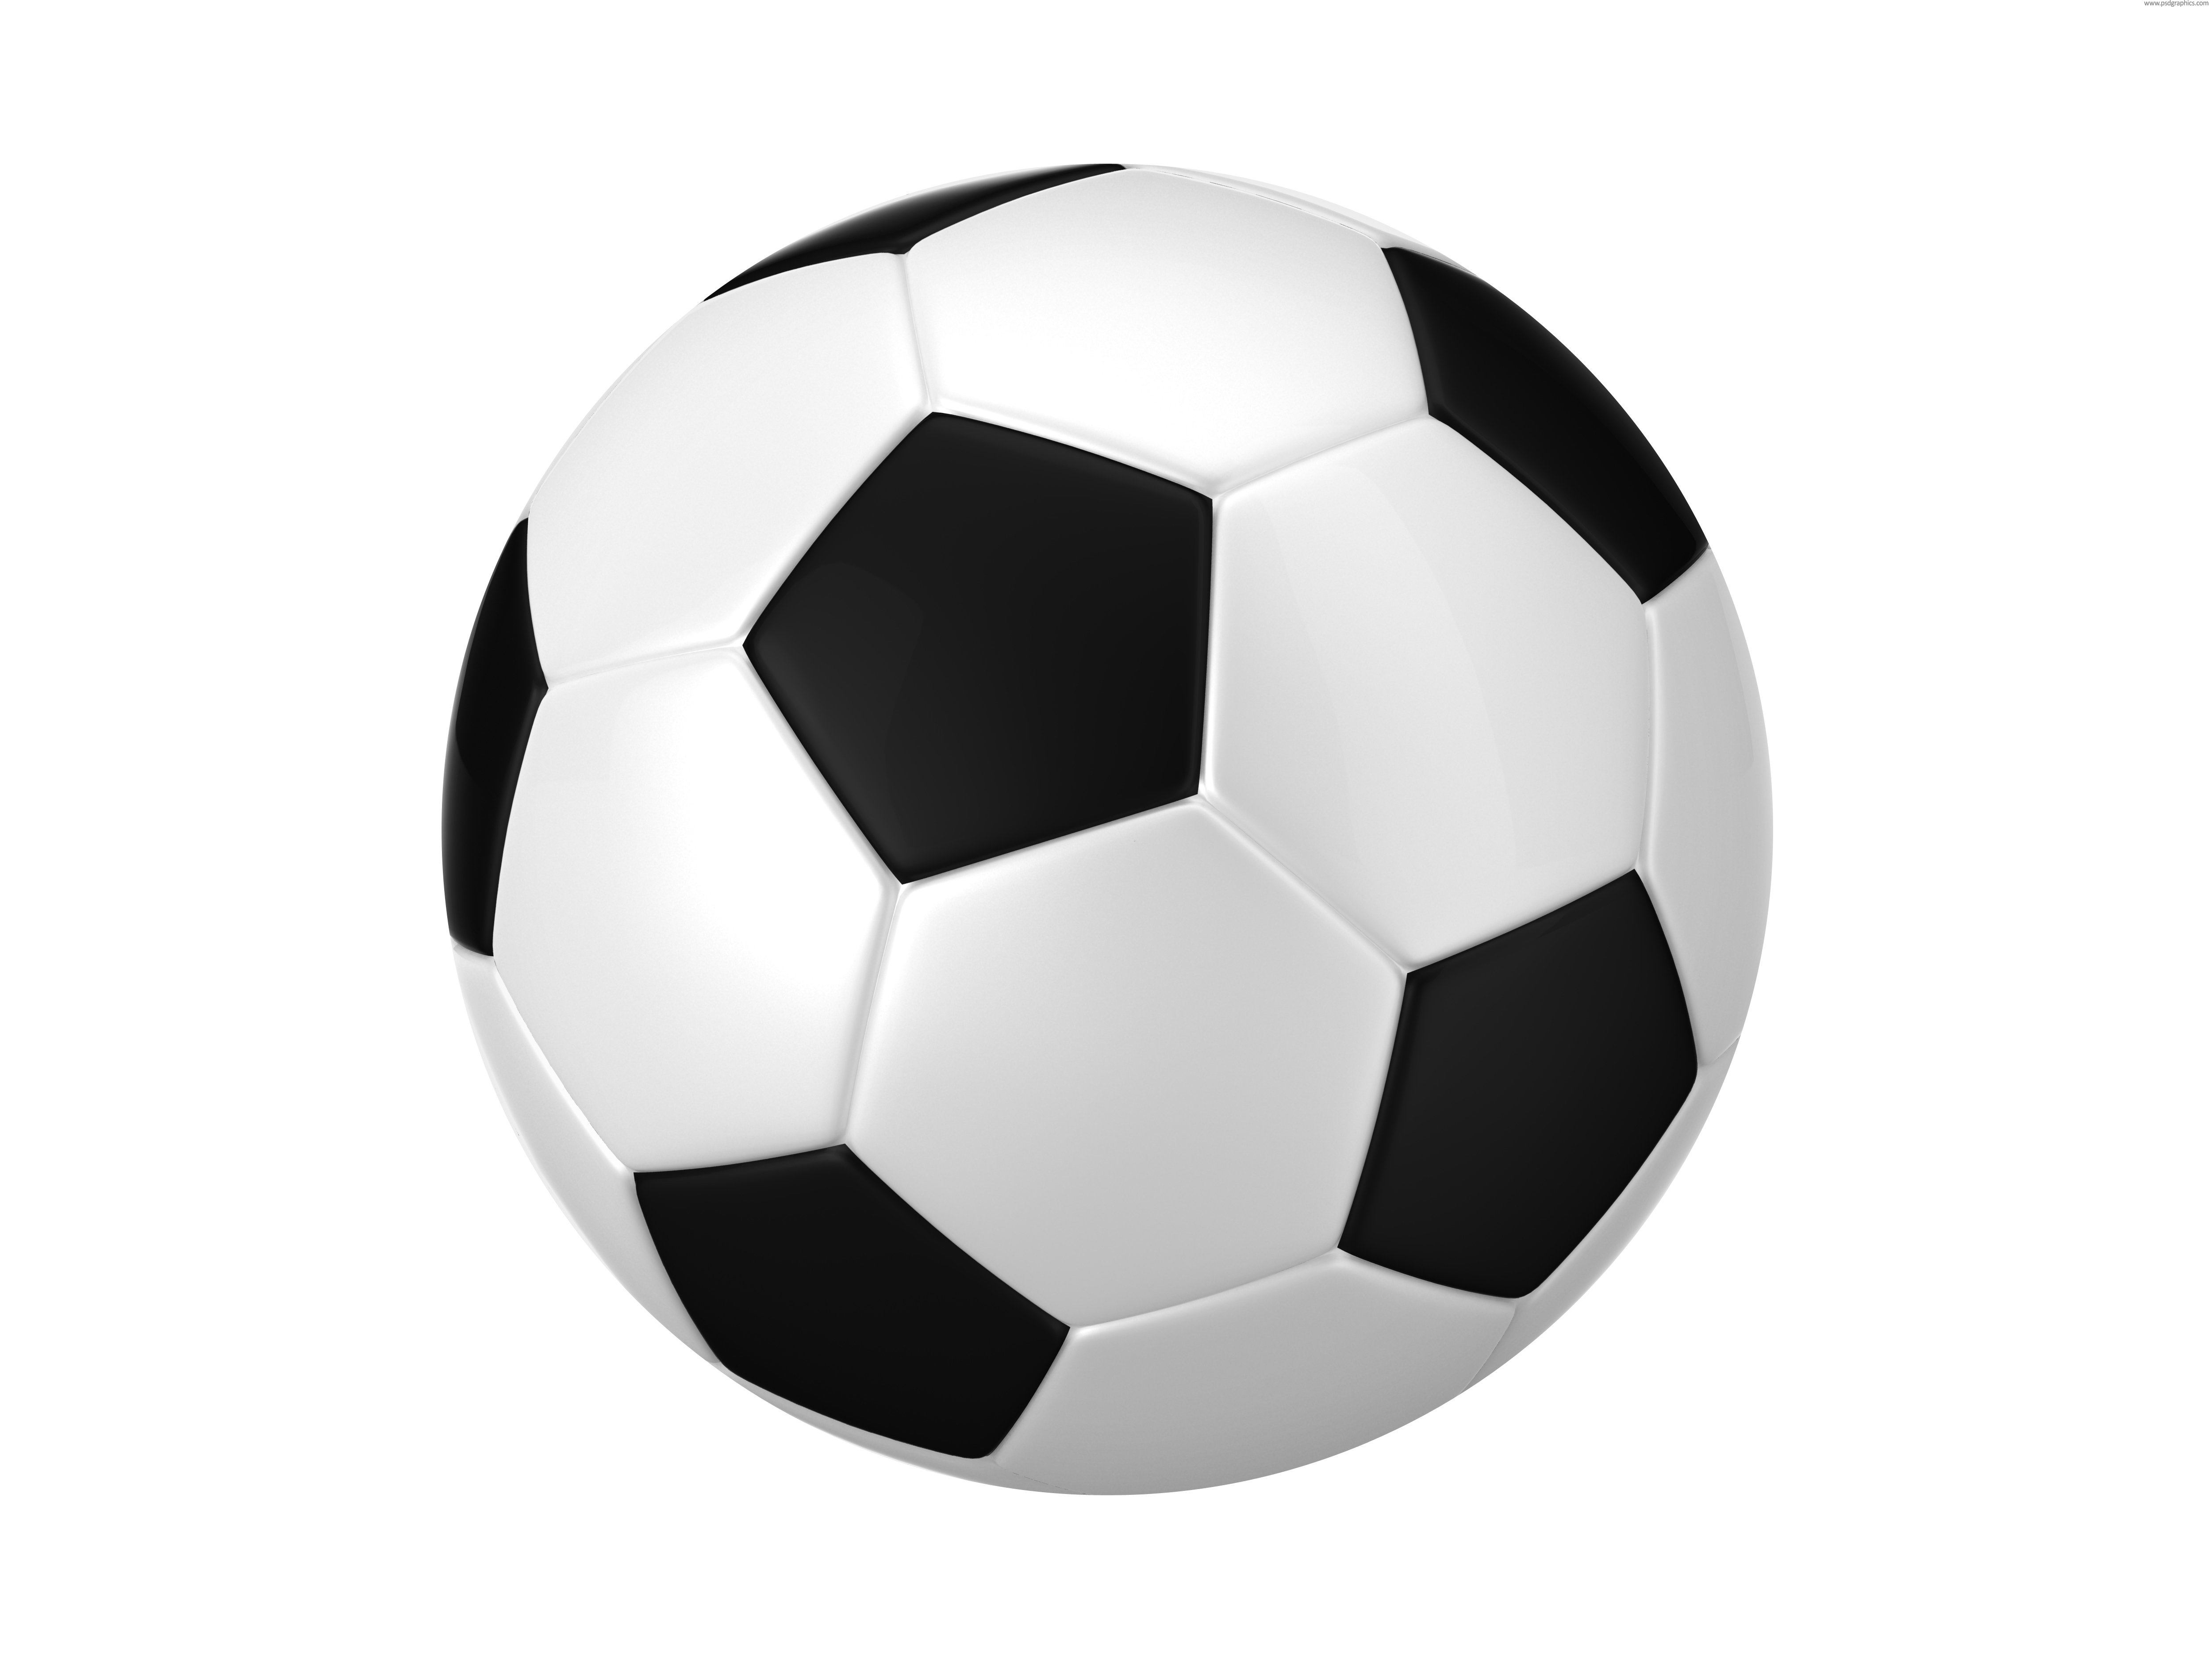 Ball part. Футбольный мяч. Футбольный мячик. Мячики для детей футбольные. Футбольный мяч черно белый.